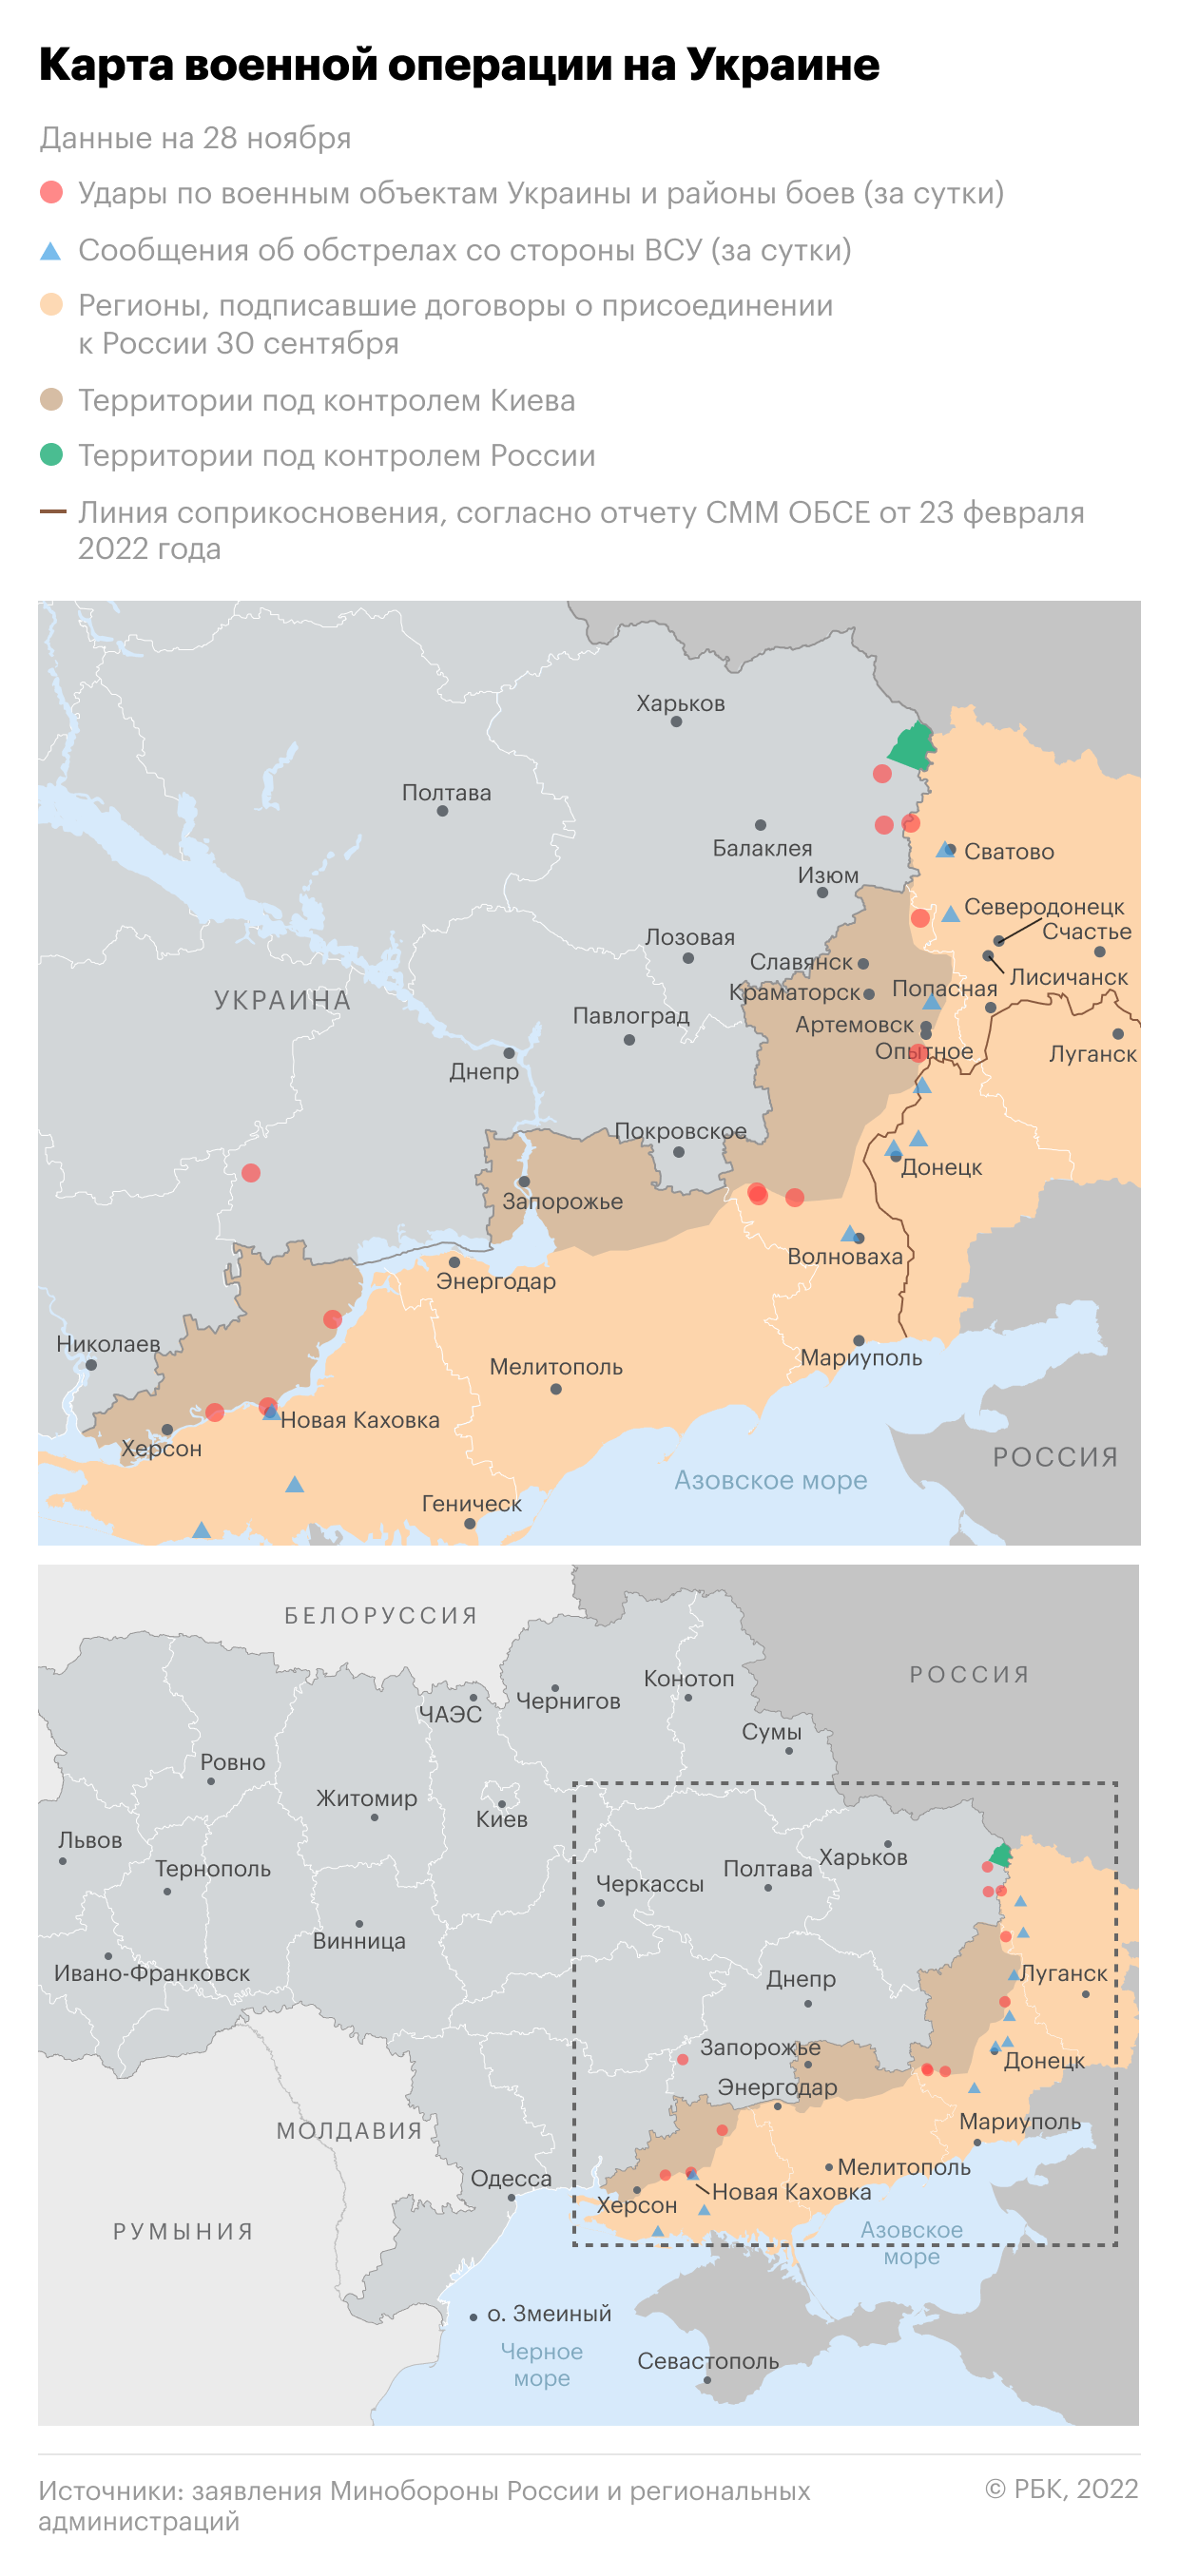 Народная милиция сообщила о переходе границы ЛНР украинскими войсками